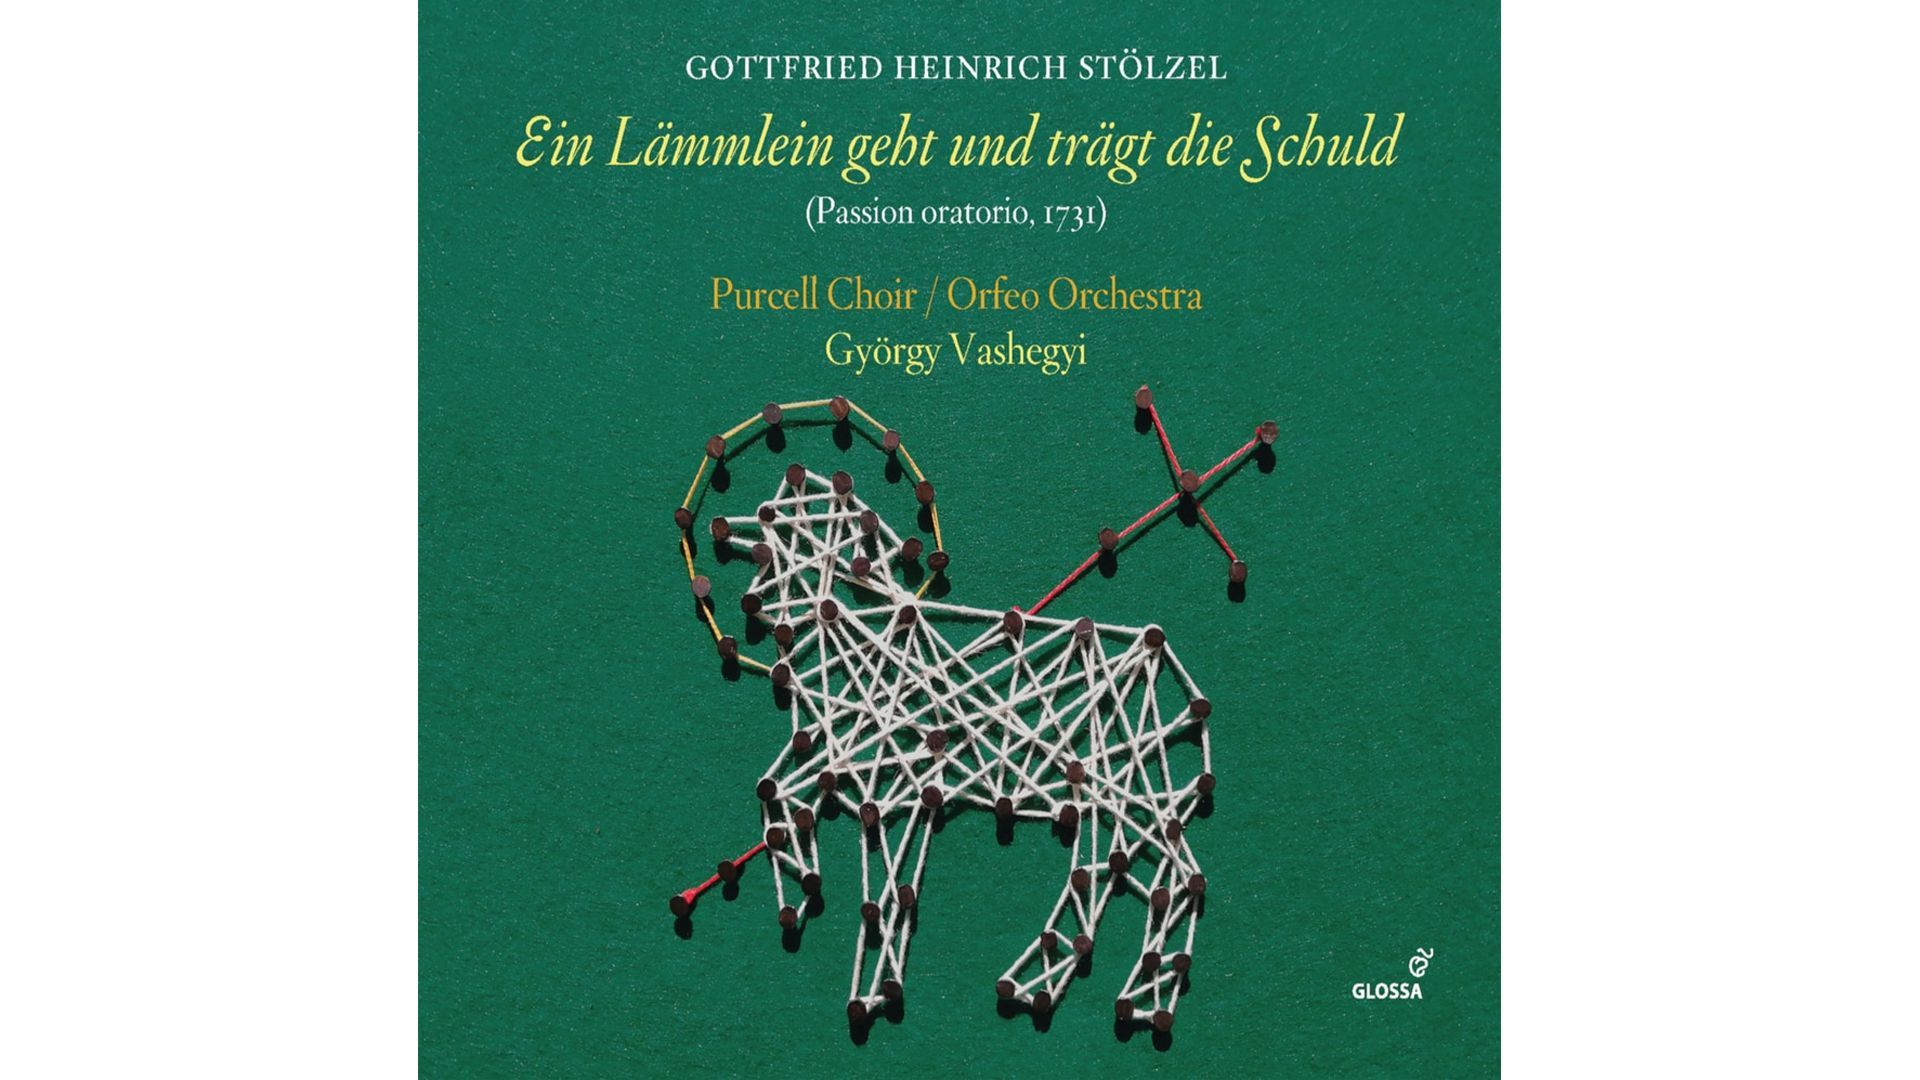 György Vashegyi, Orfeo Orchestra, Purcell Choir - Stölzel - Ein Lämmlein geht und trägt die Schuld